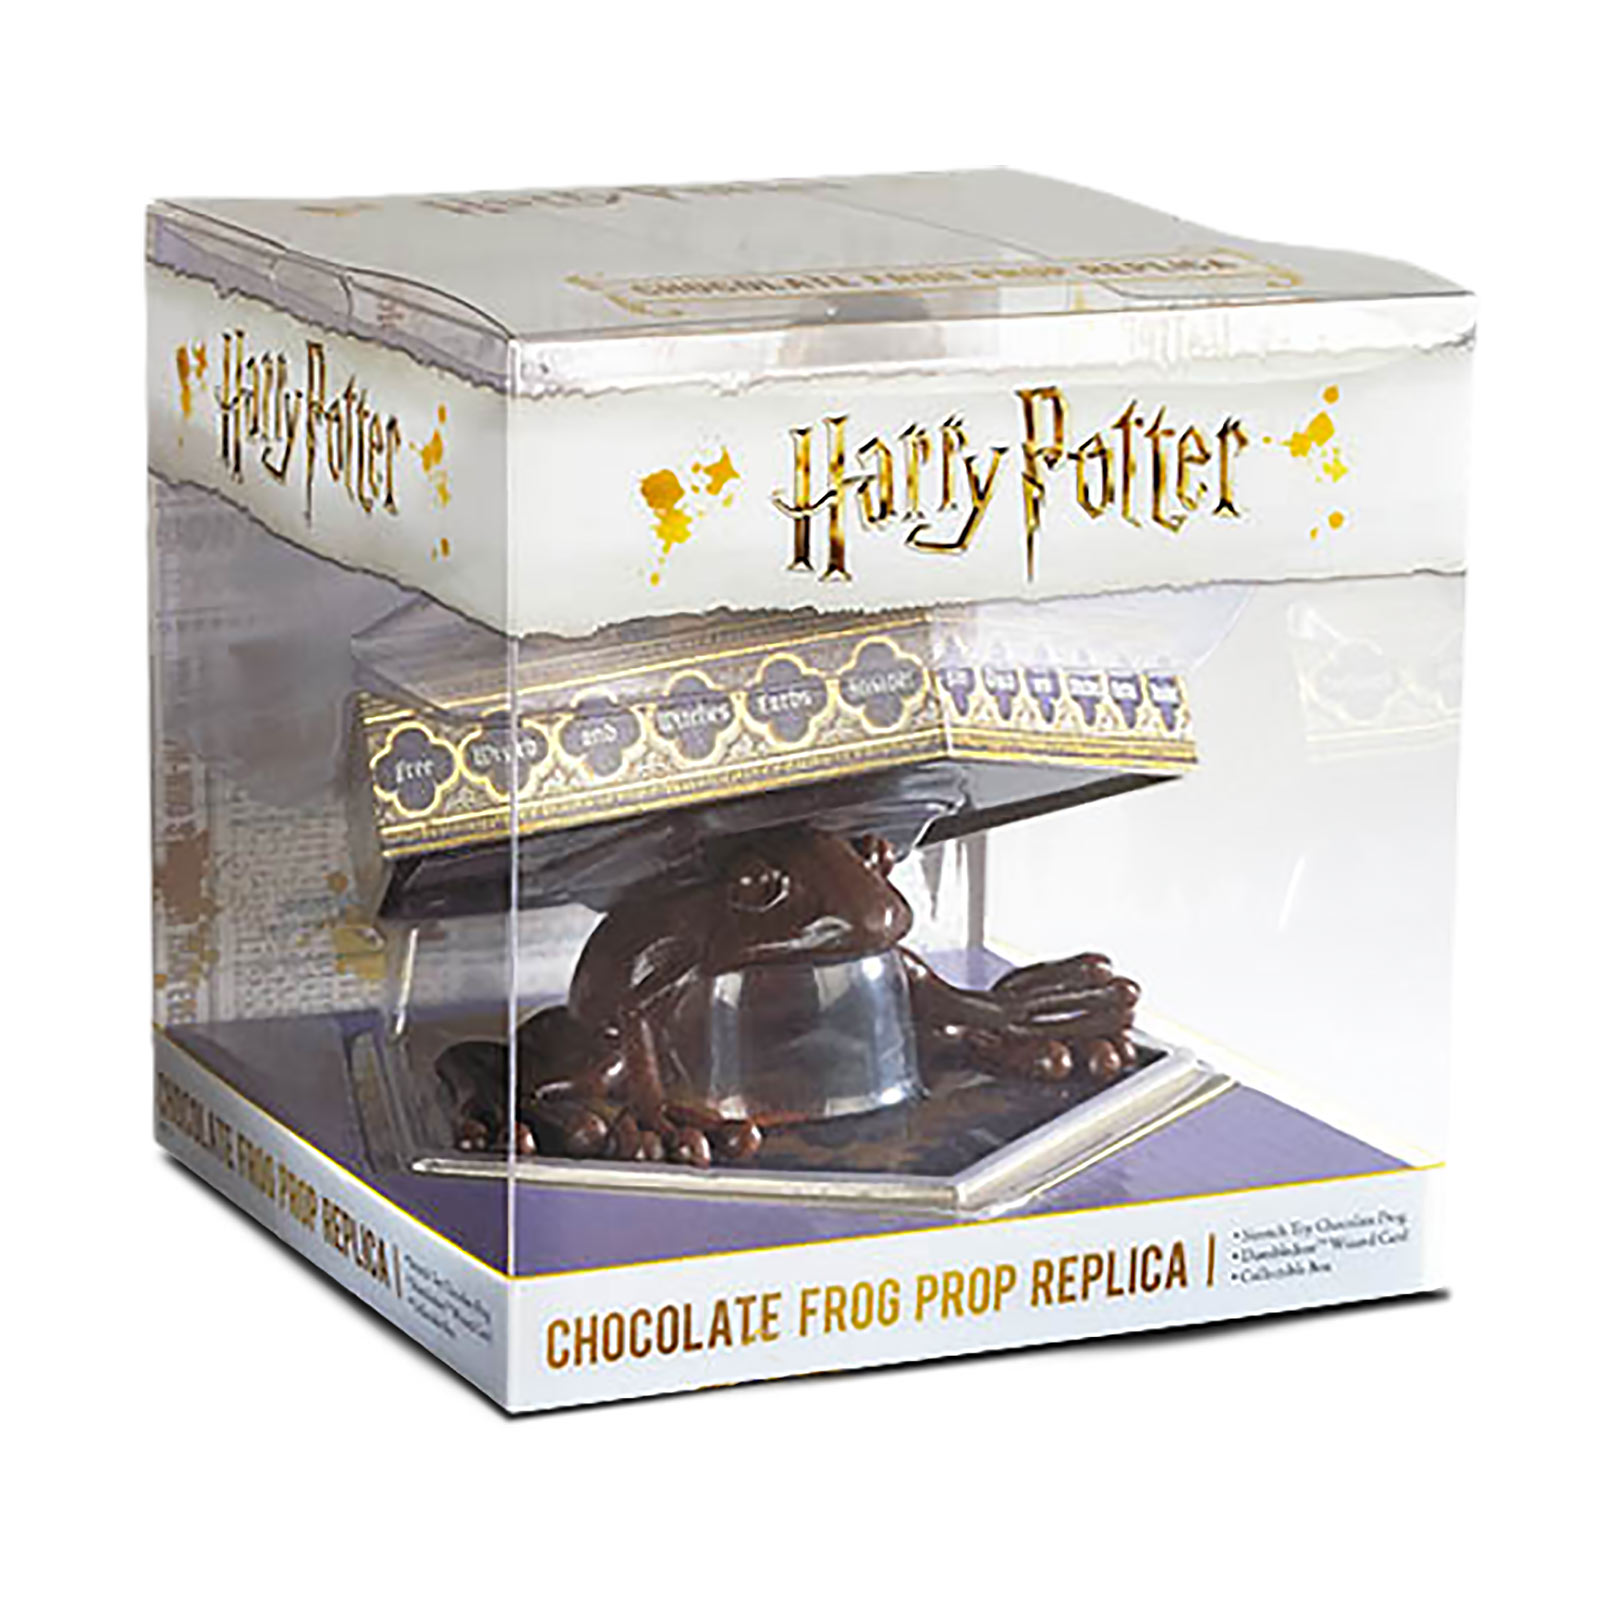 Schokofrosch Figur mit Sammelkarte - Harry Potter Replik